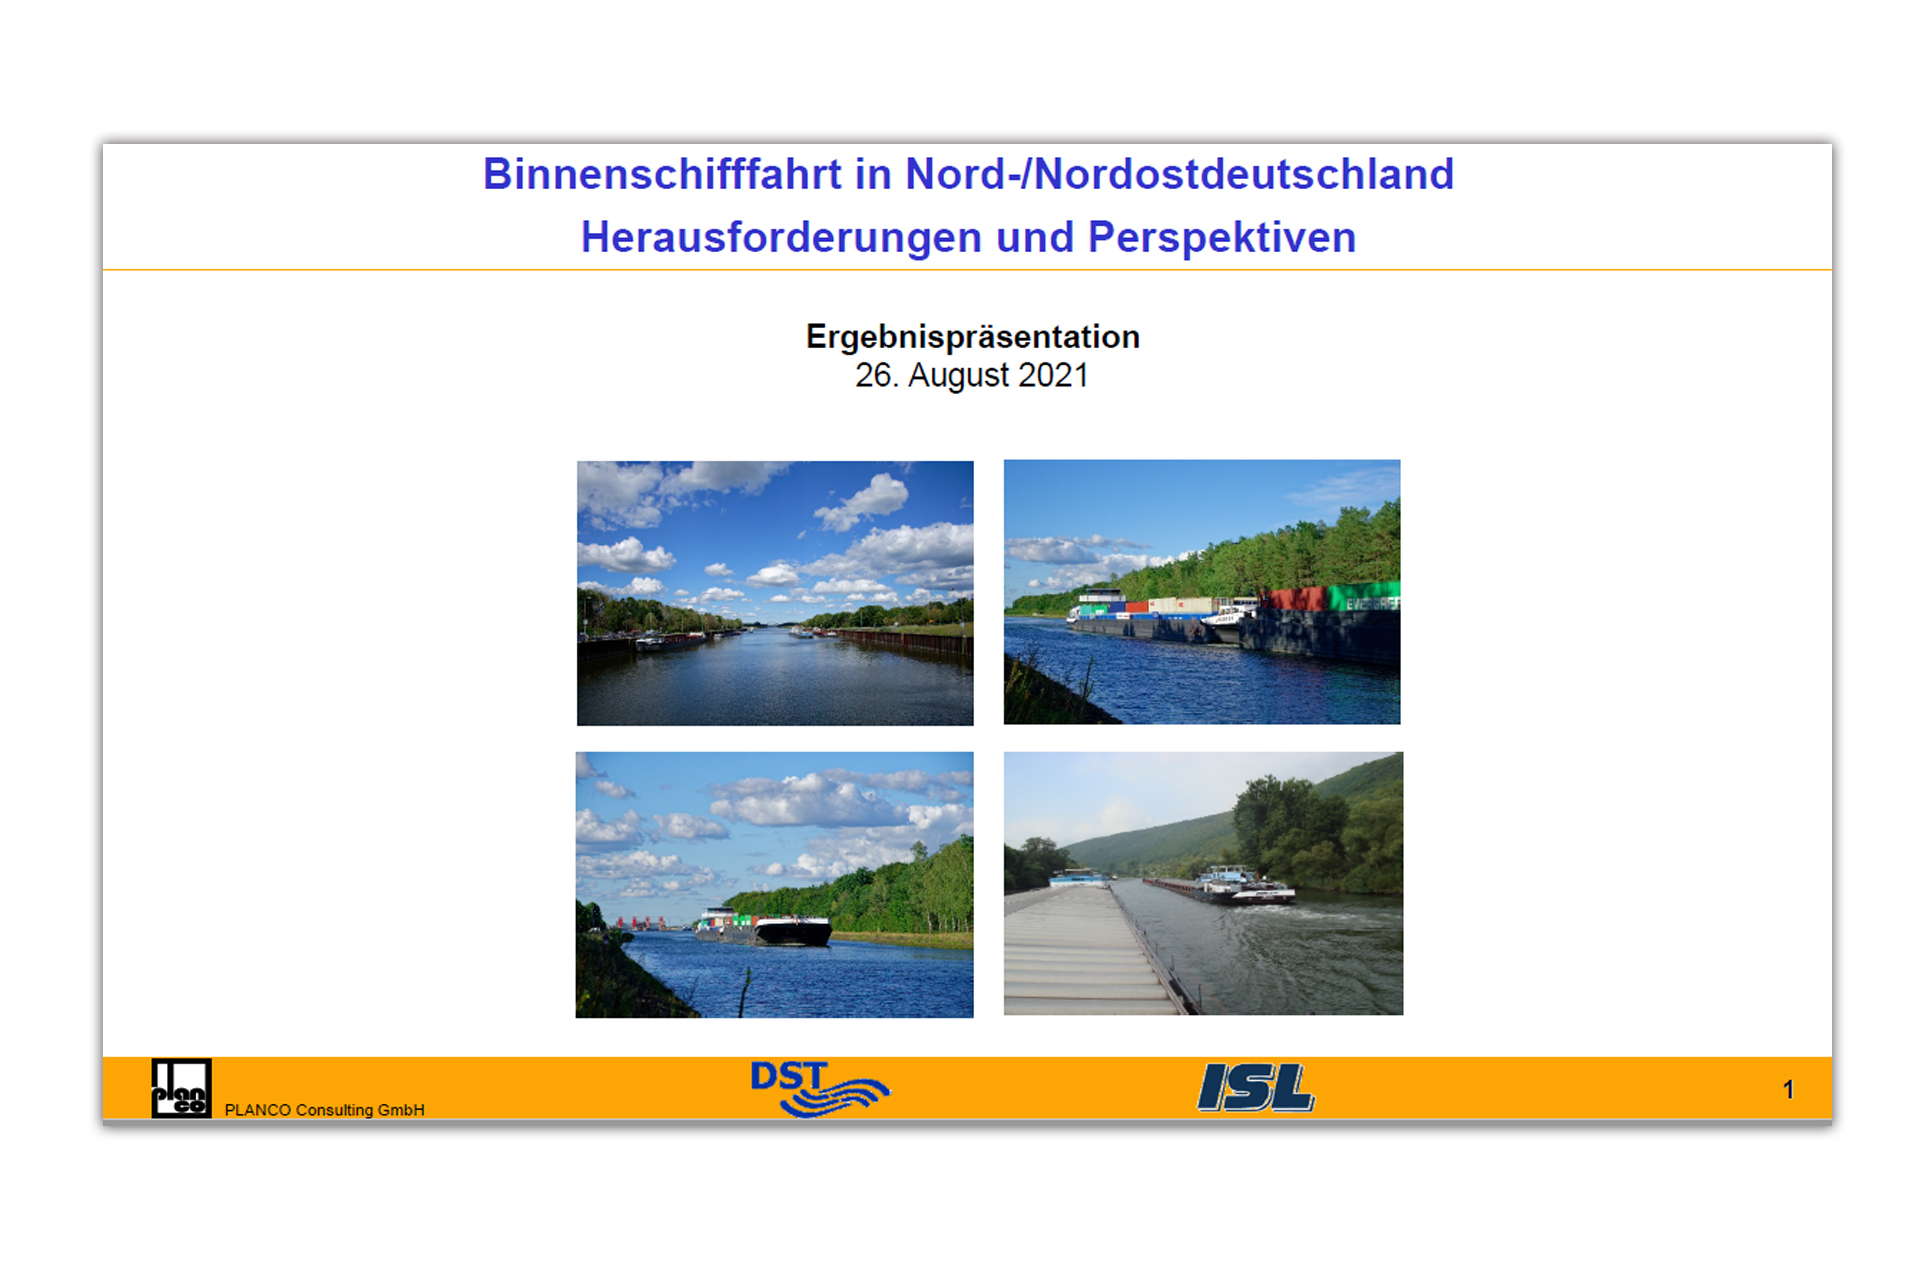 Binnenschifffahrt in Nord-, Nord-/Ostdeutschland: Herausforderungen und Perspektiven